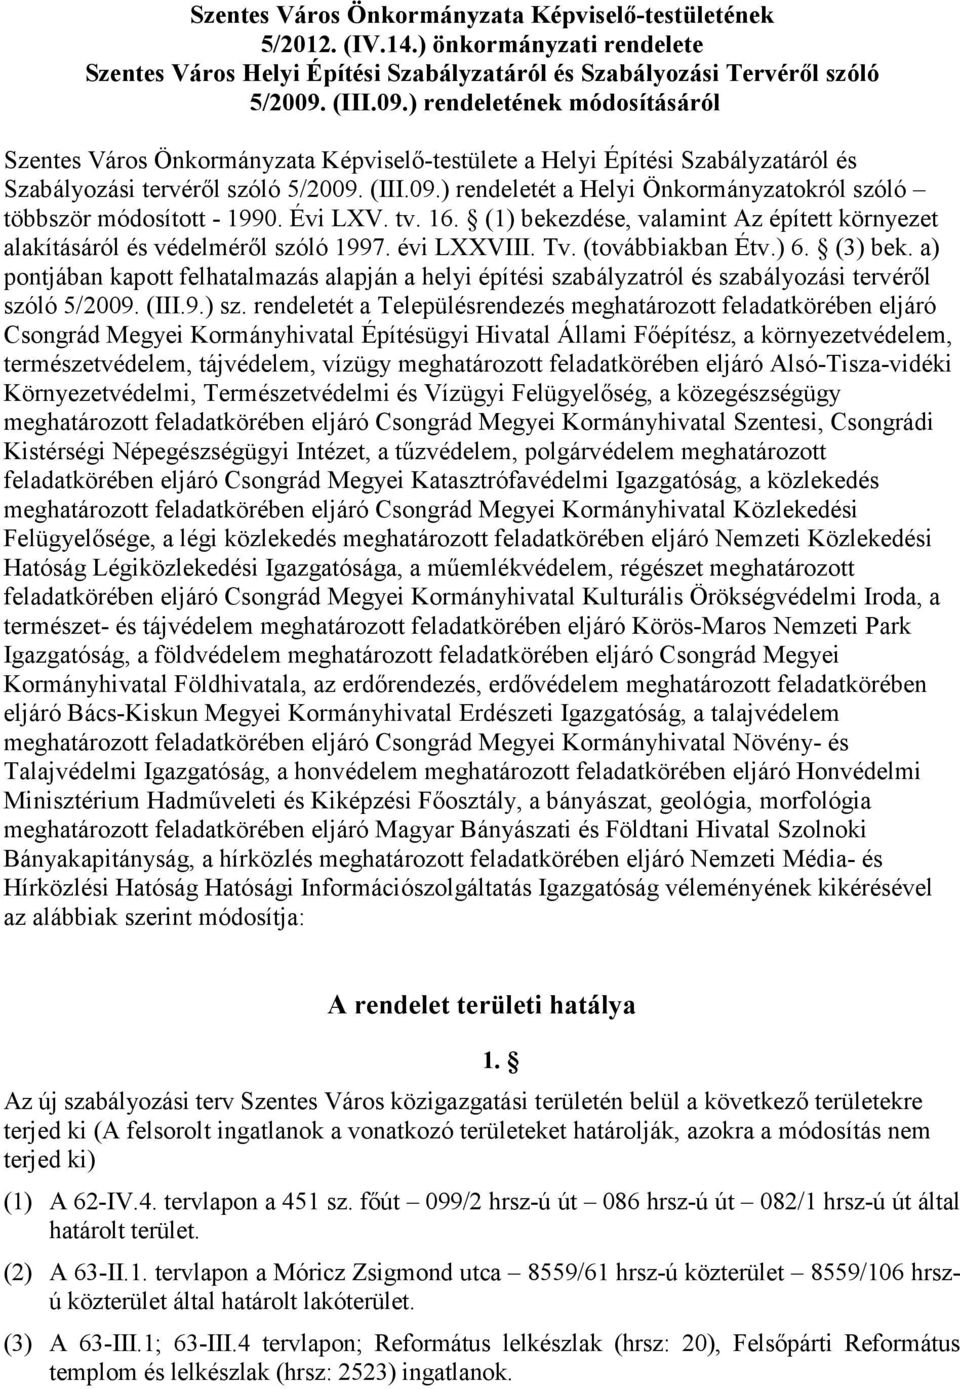 Évi LXV. tv. 16. (1) bekezdése, valamint Az épített környezet alakításáról és védelmérıl szóló 1997. évi LXXVIII. Tv. (továbbiakban Étv.) 6. (3) bek.